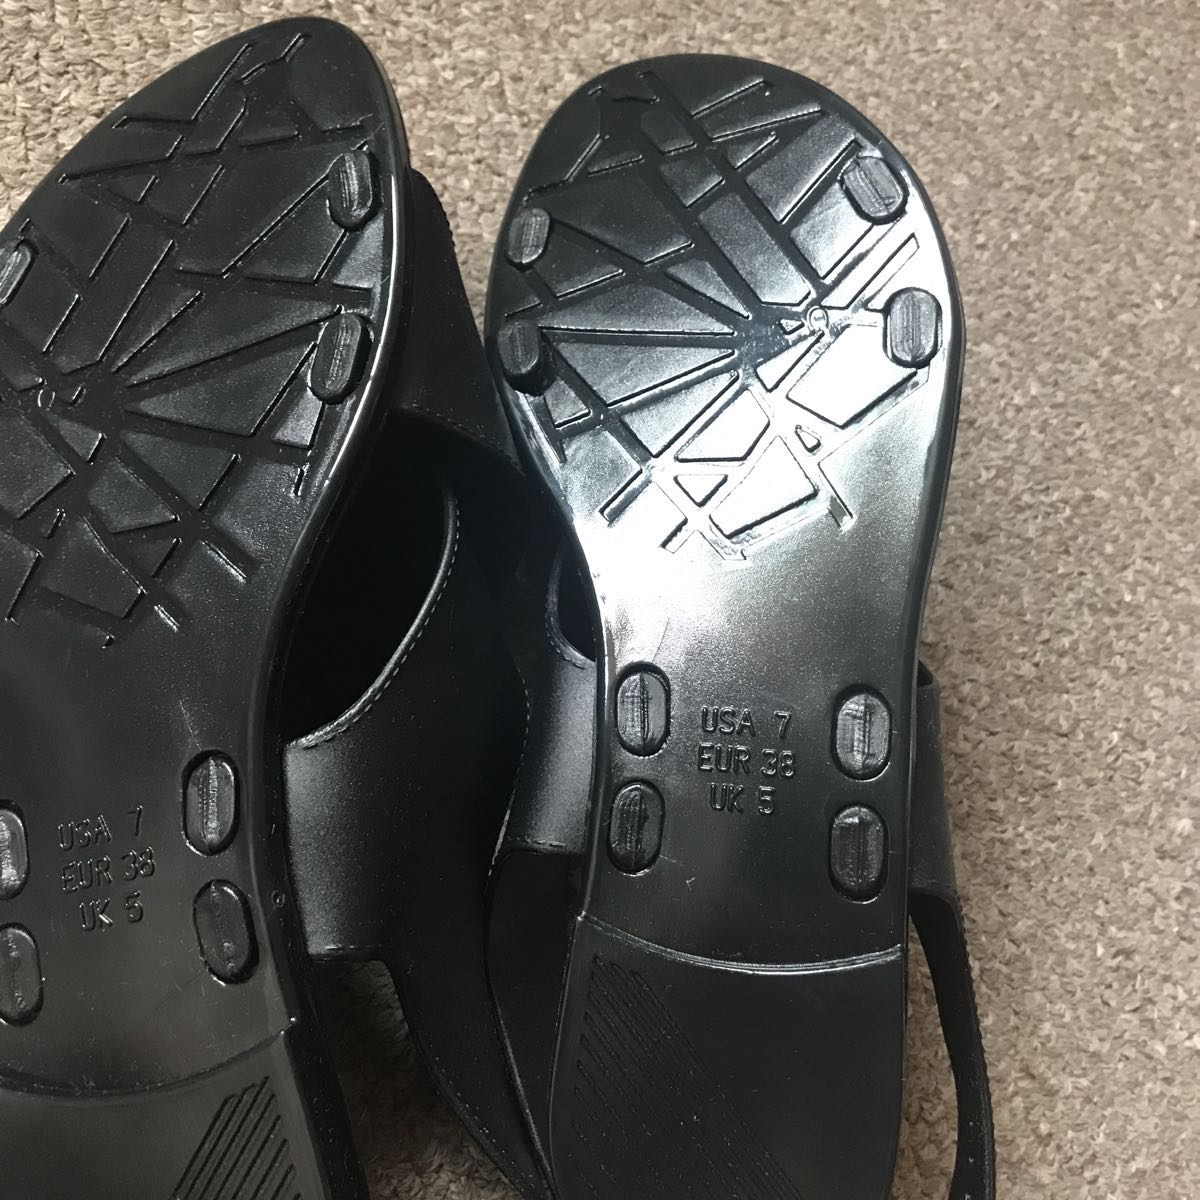 黑色涼鞋新貨尺碼UA 7 23.0-23.5 原文:黒サンダル 新品 サイズUA7 23.0-23.5